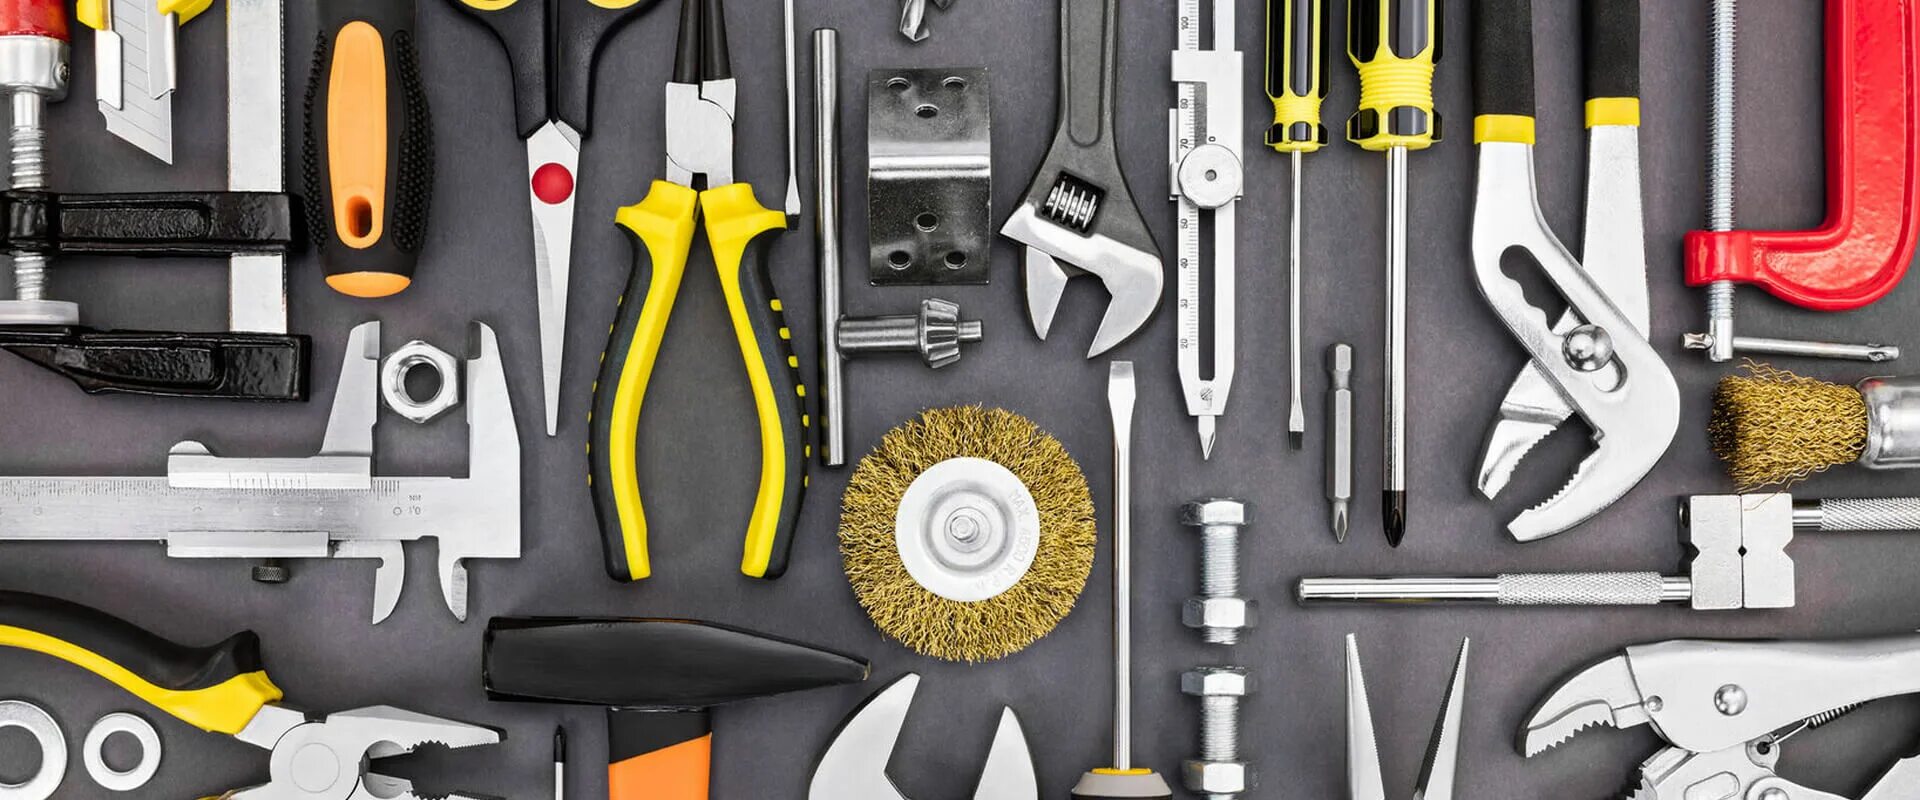 Tools sharing. Строительные инструменты. Инструменты для ремонта. Сантехнический инструмент. Строительные приспособления.